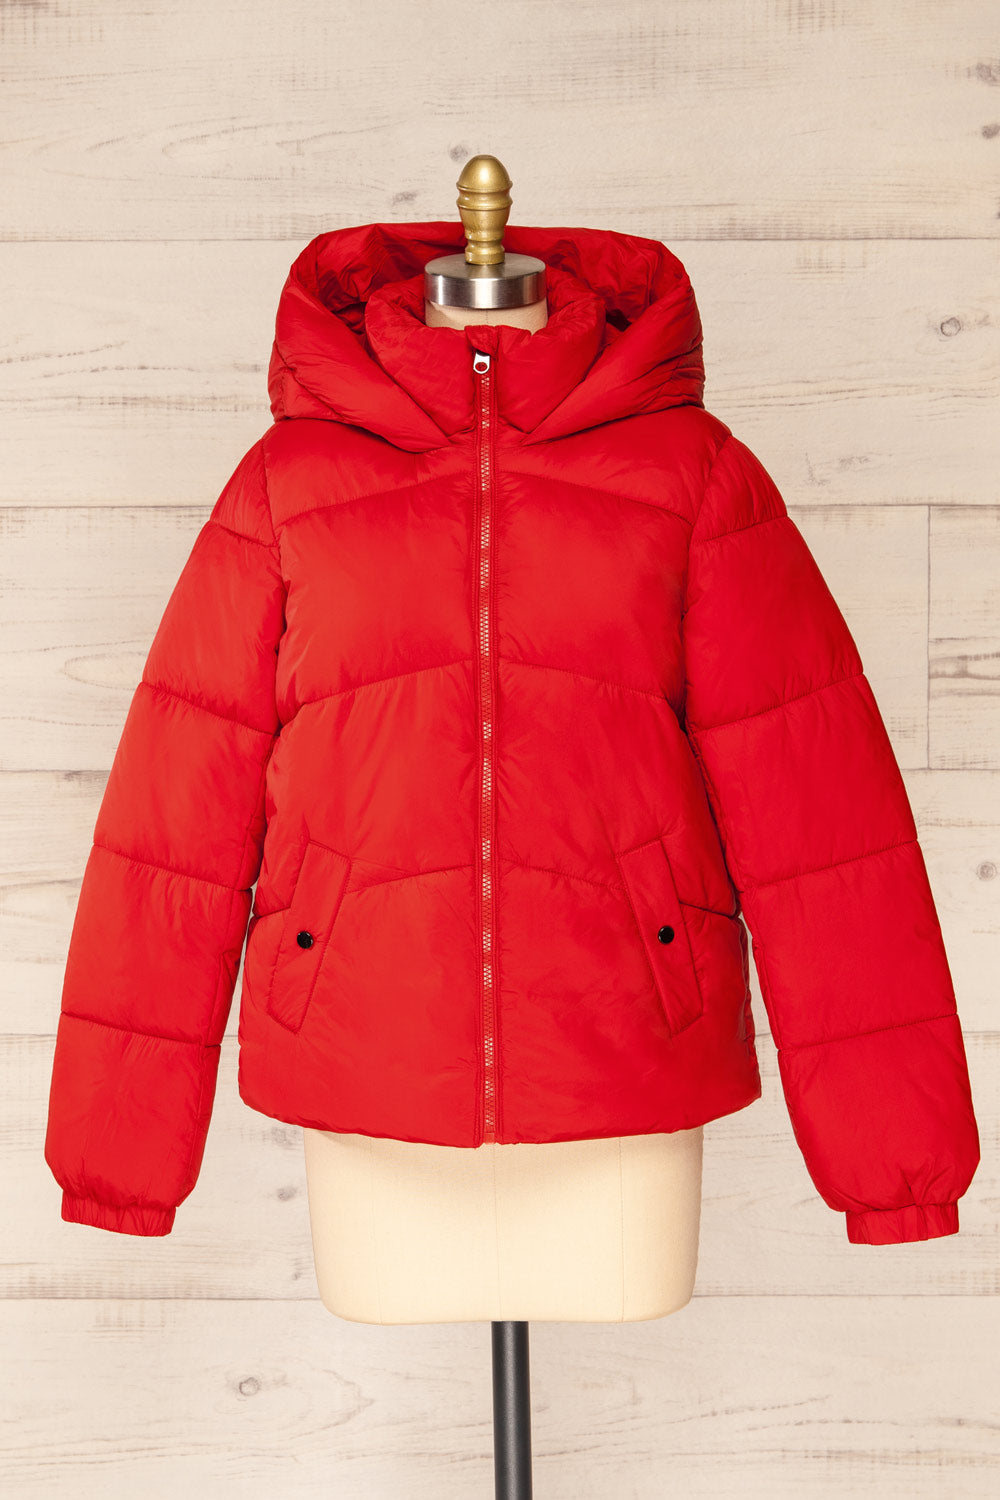 Rasdale Red Short Puffer Coat | La petite garçonne front view